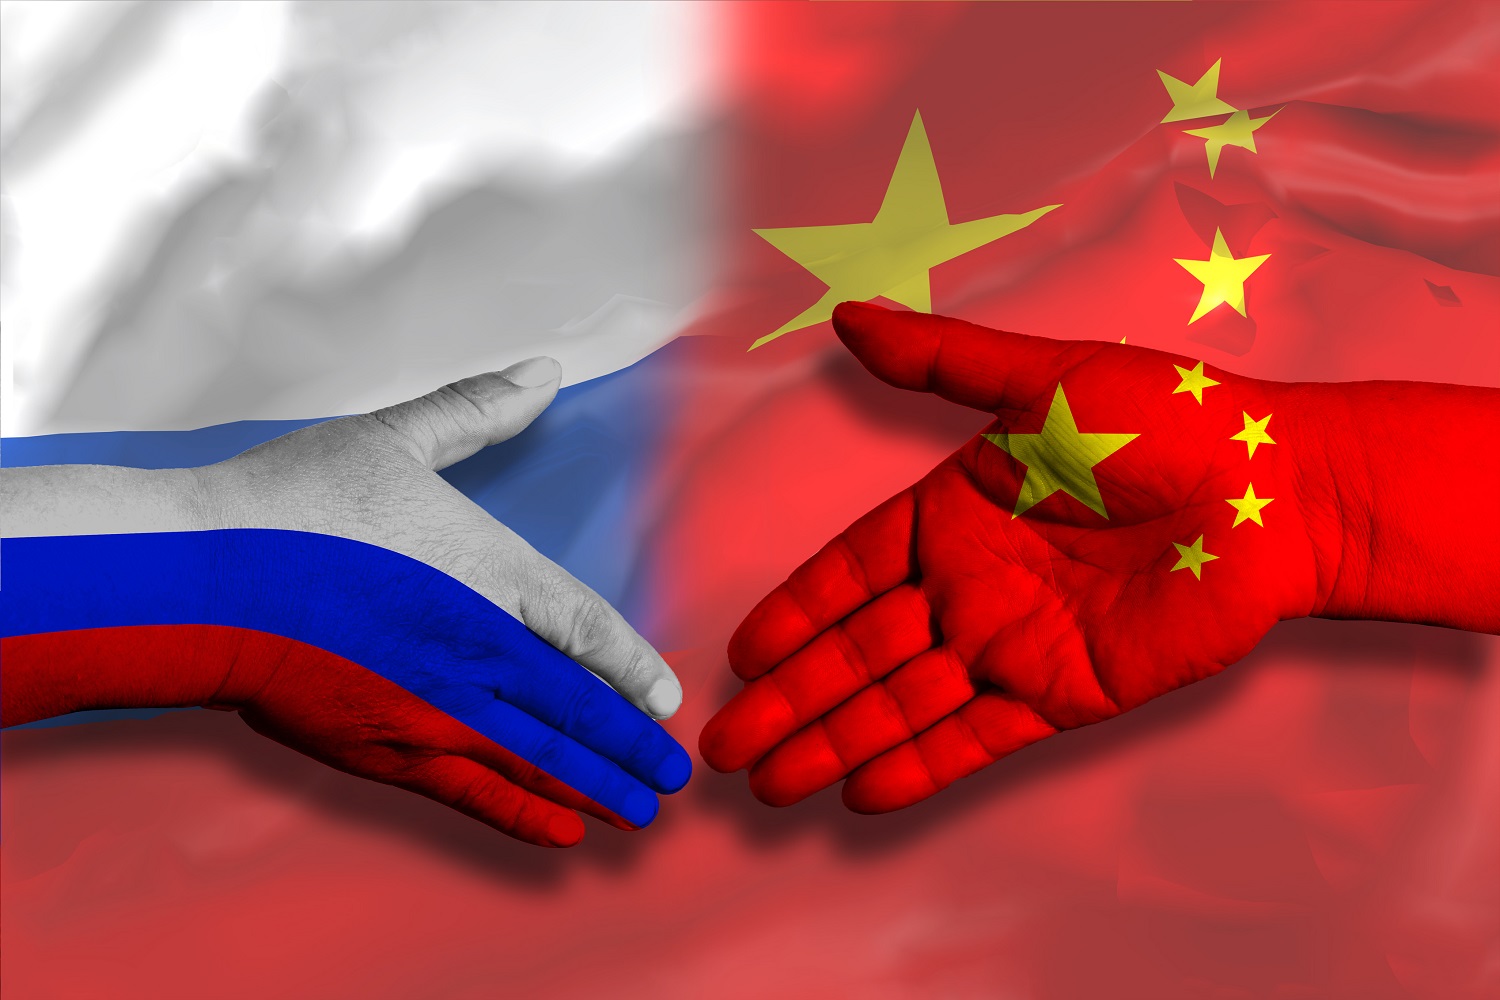 Hai bàn tay, một tay được trang trí bằng màu cờ Trung Quốc và tay kia có màu cờ Nga, di chuyển cùng nhau như thể đang bắt tay trên nền cờ của cả hai nước.